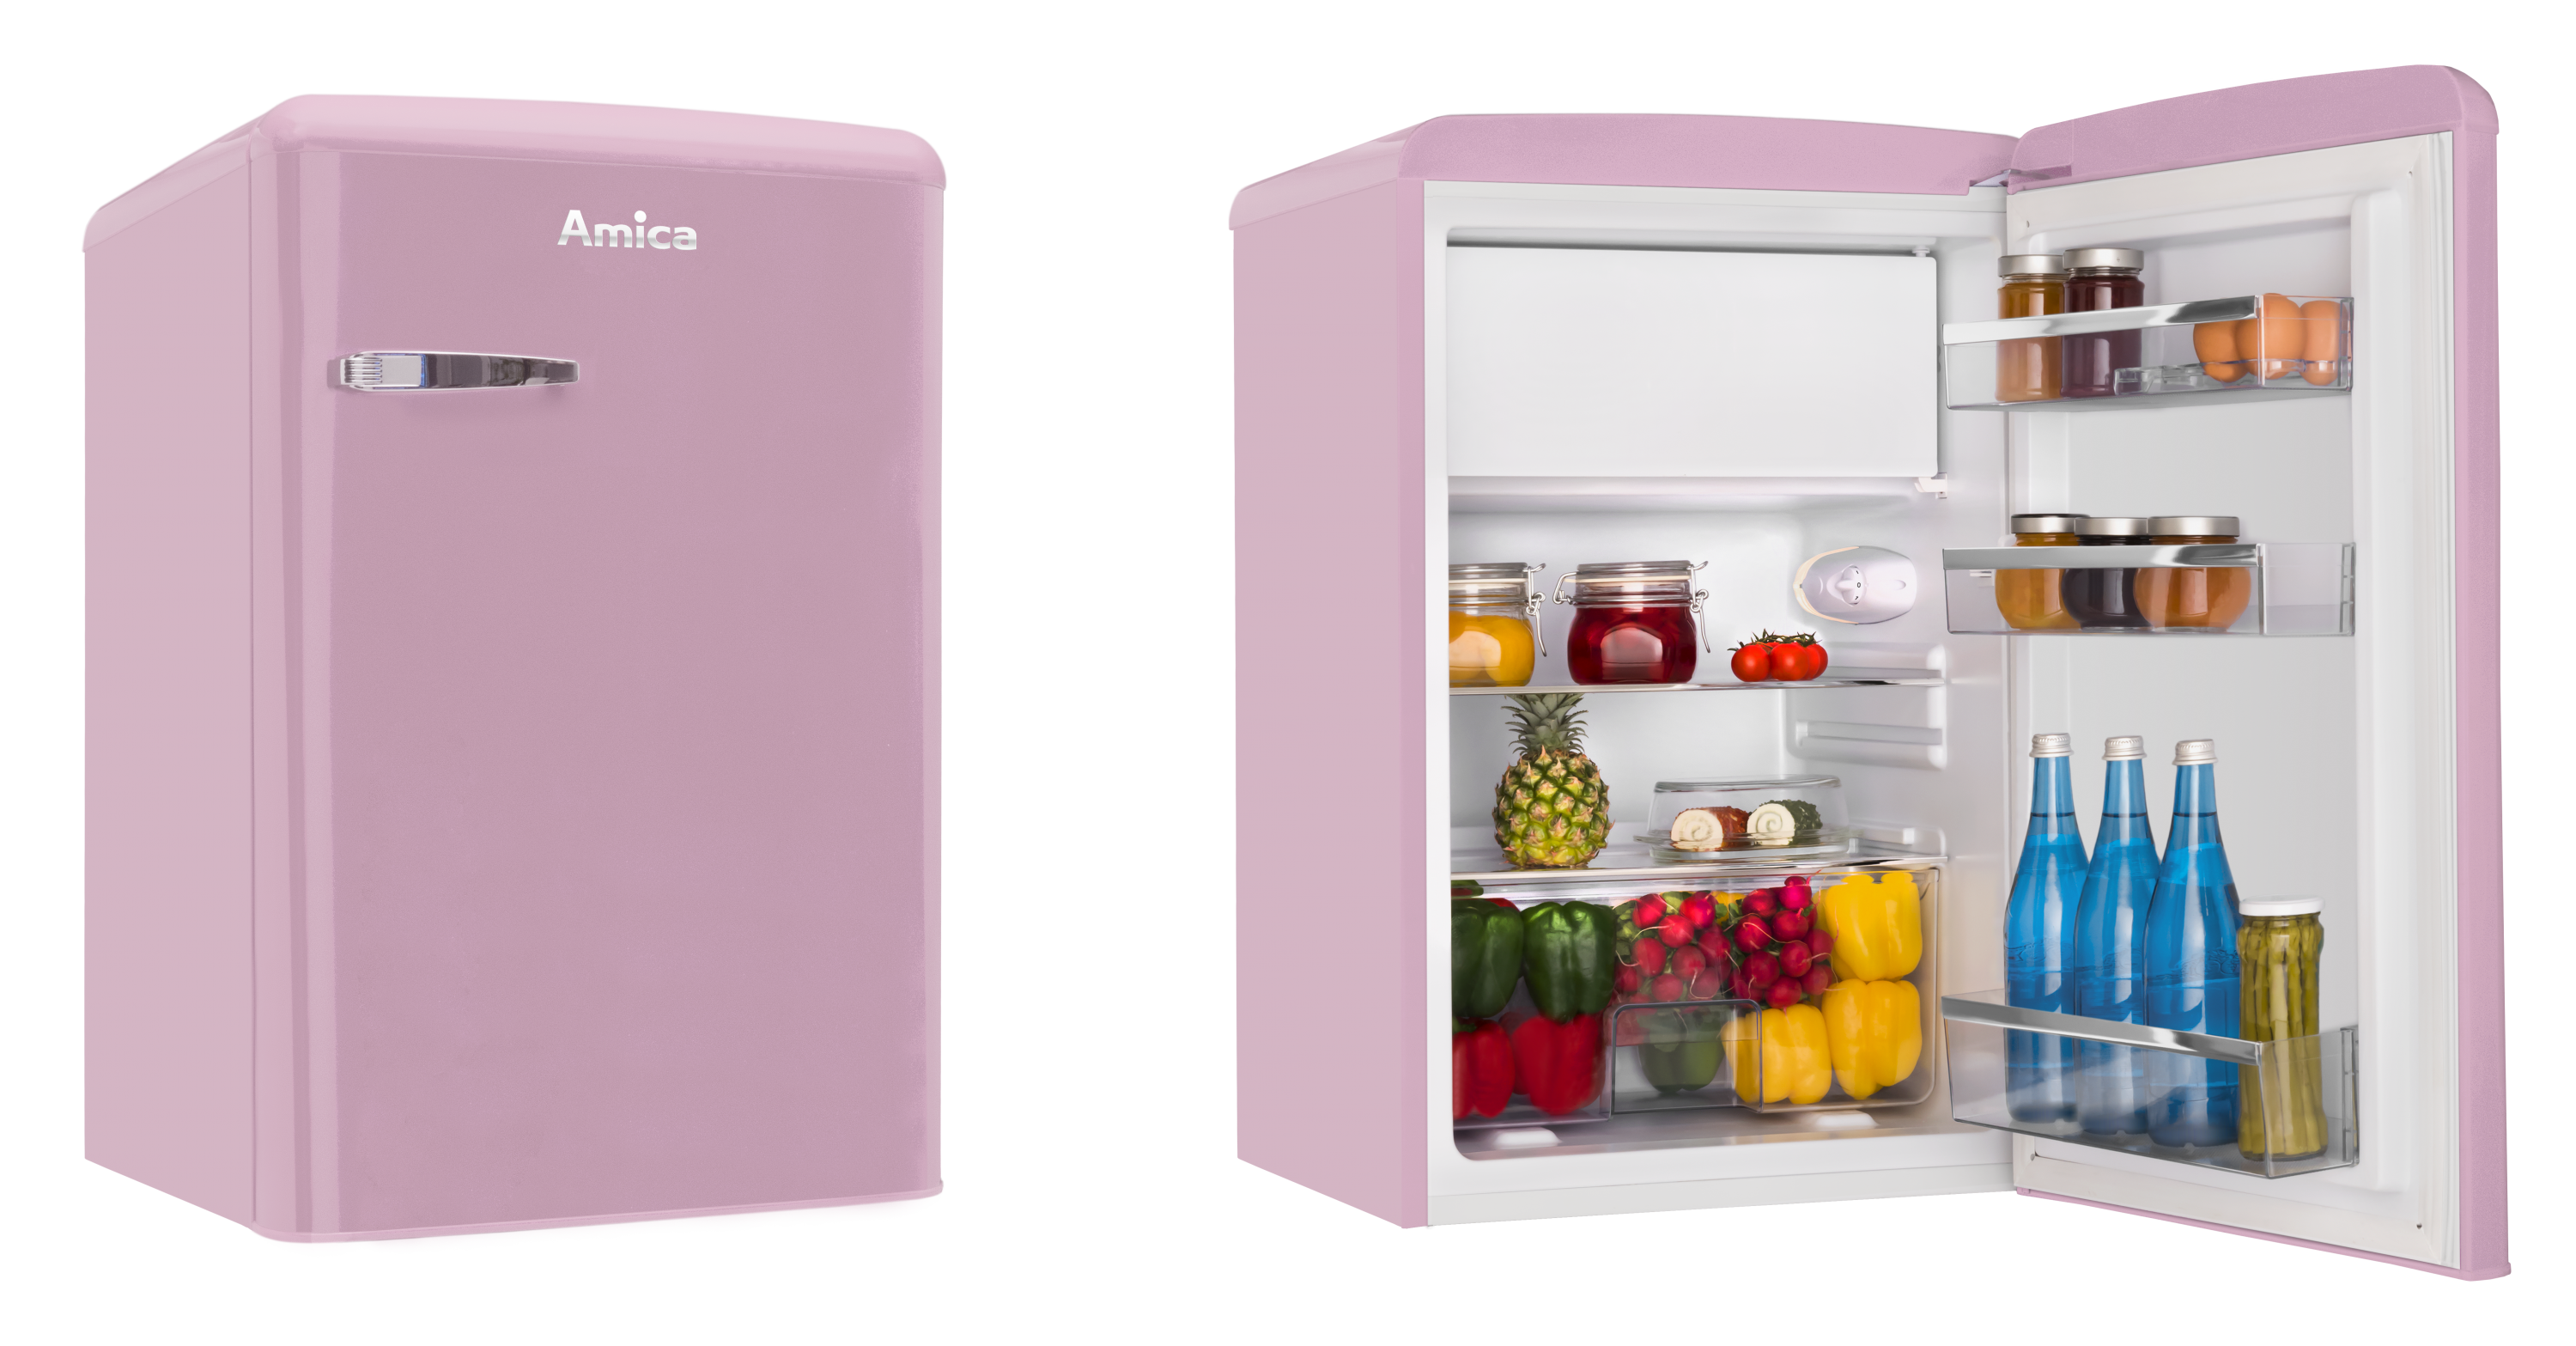 Freestanding refrigerator